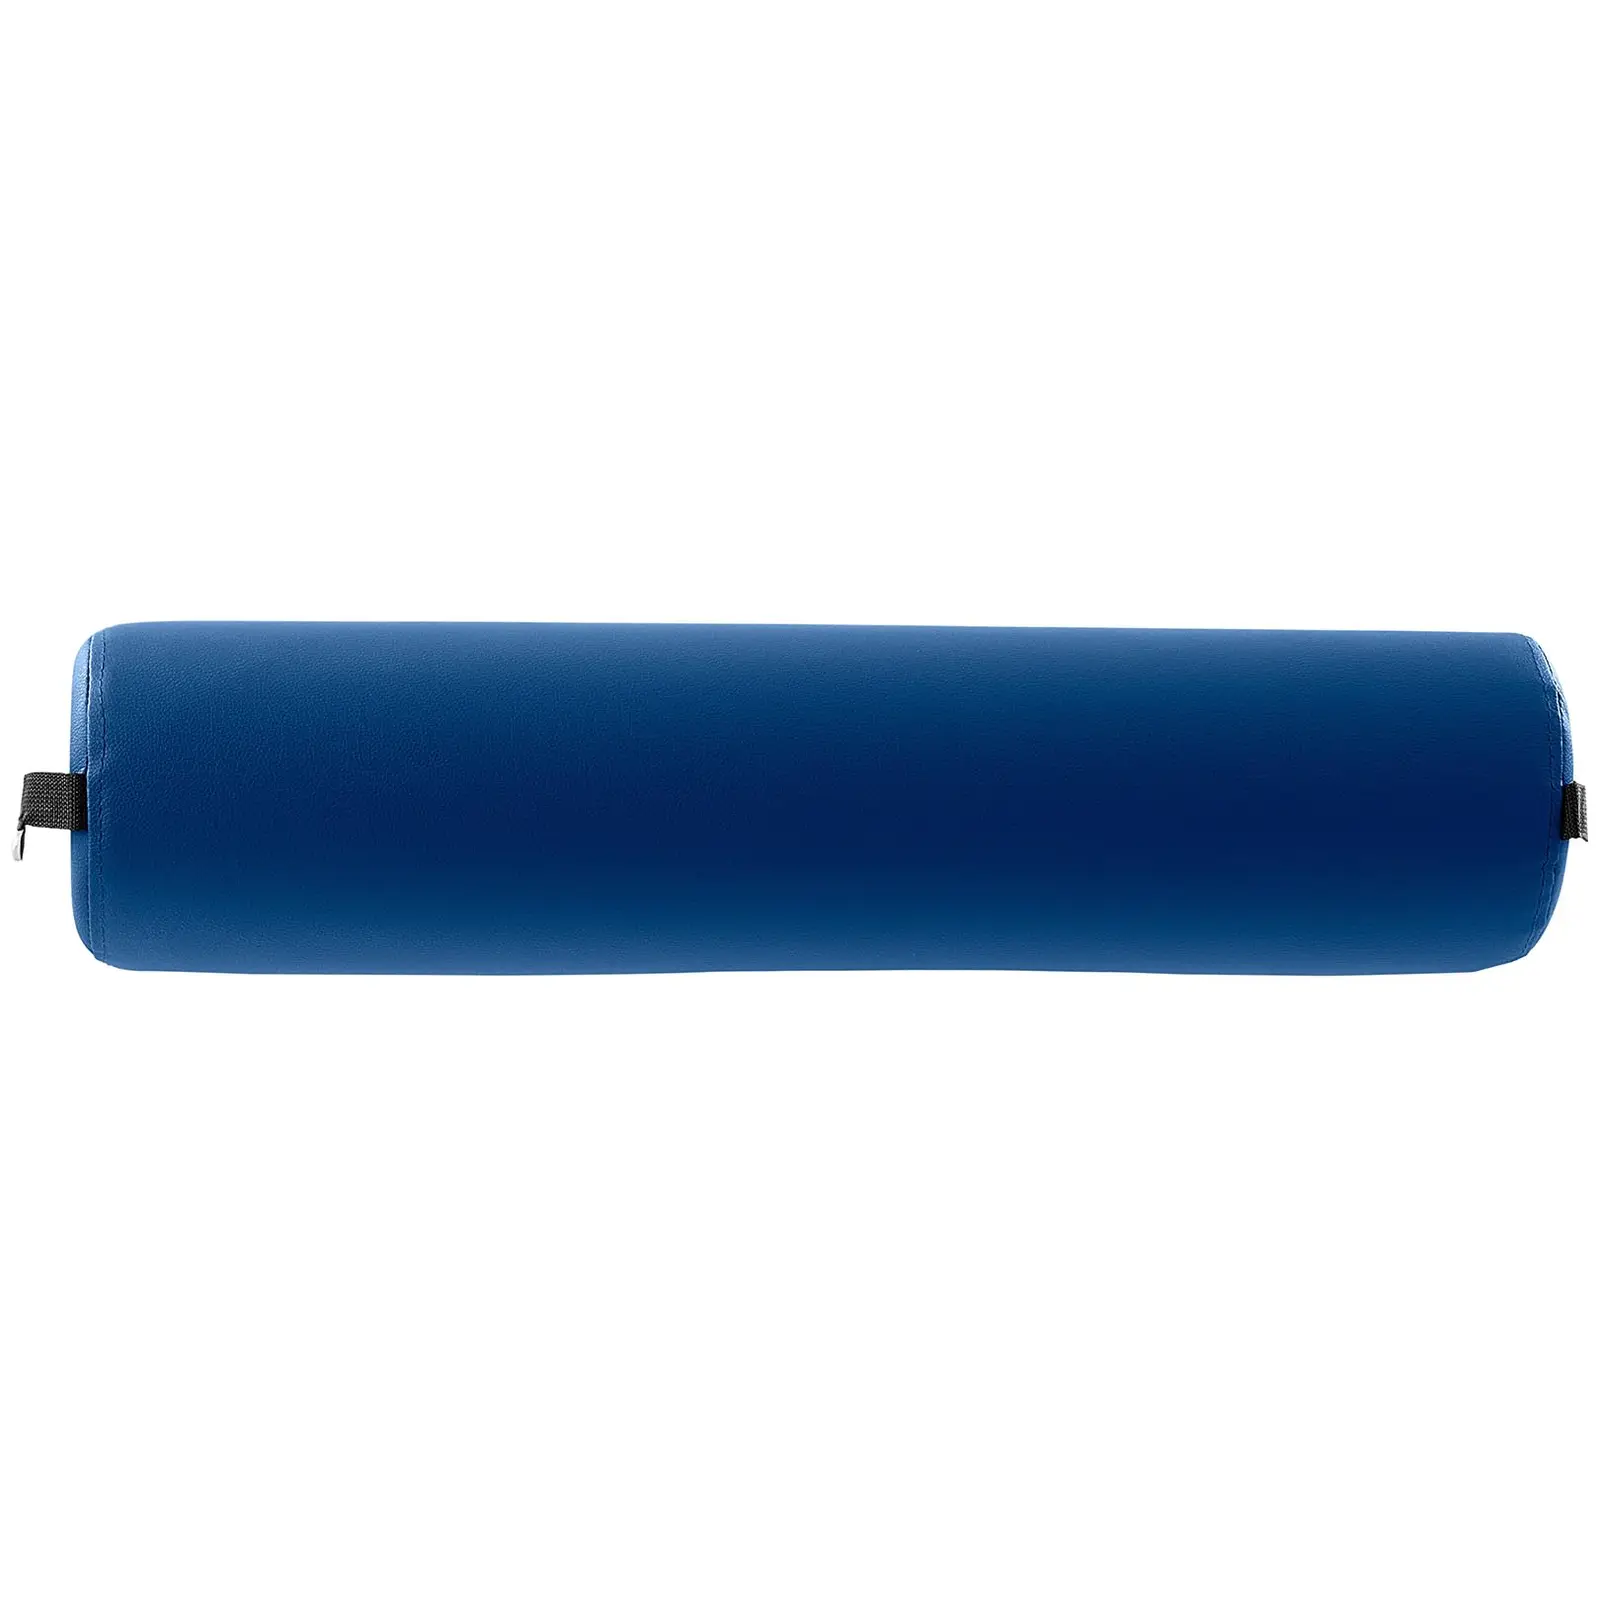 Rodillo masajeador - cilíndrico - azul